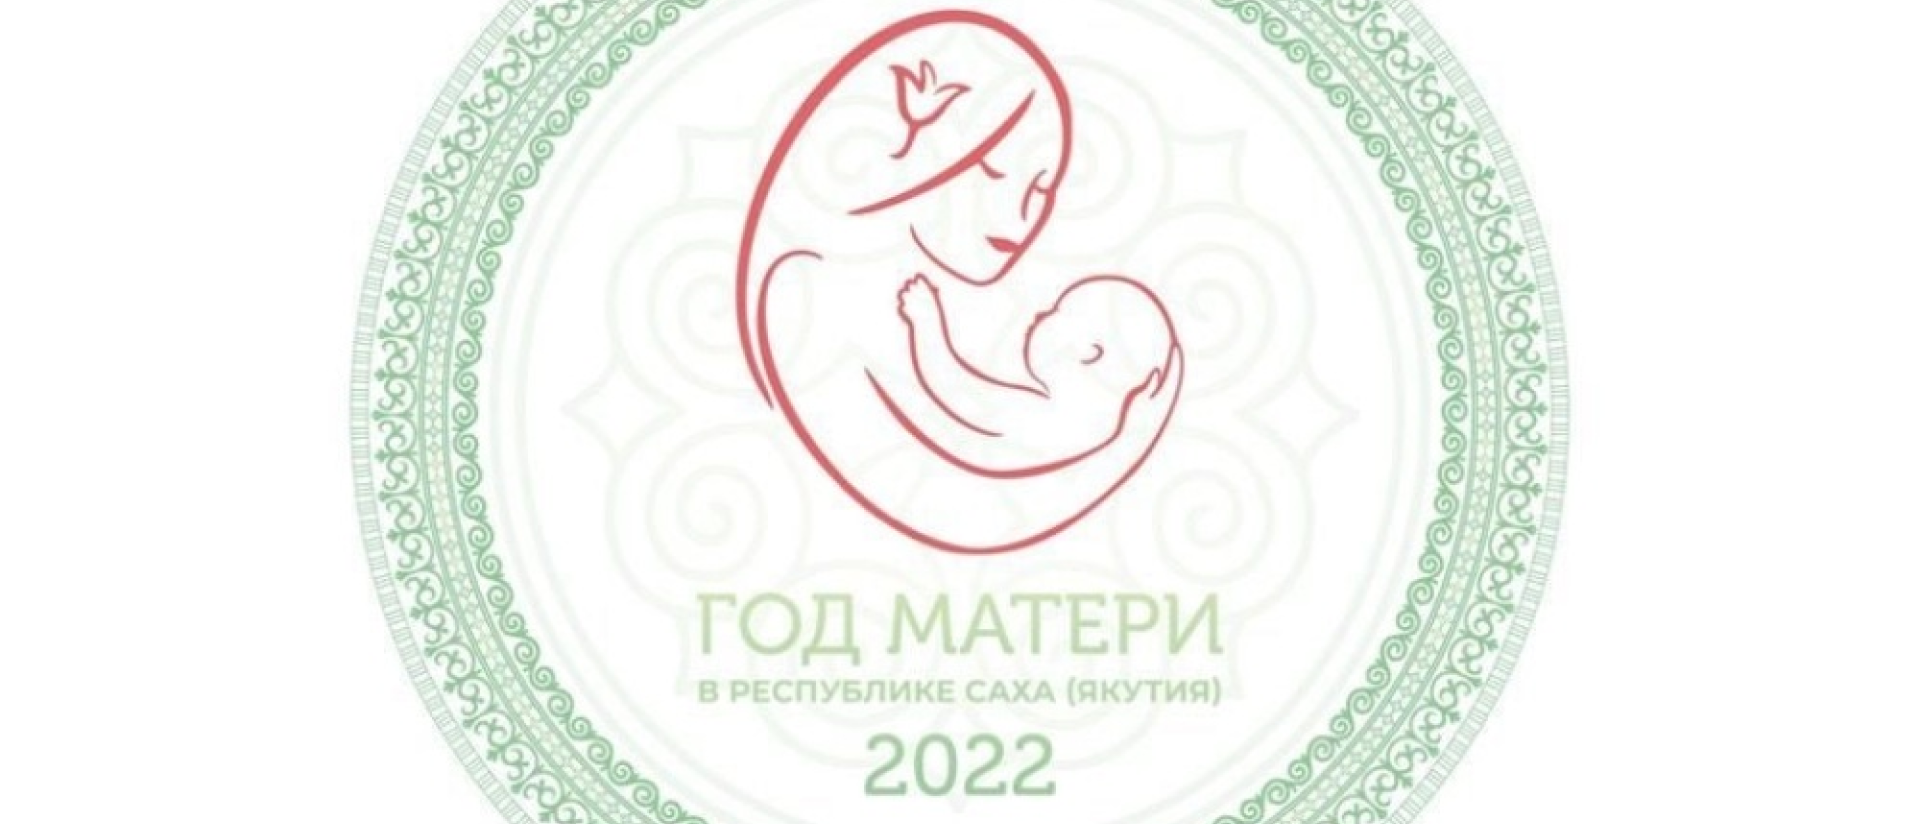 В Якутии утвержден логотип Года матери